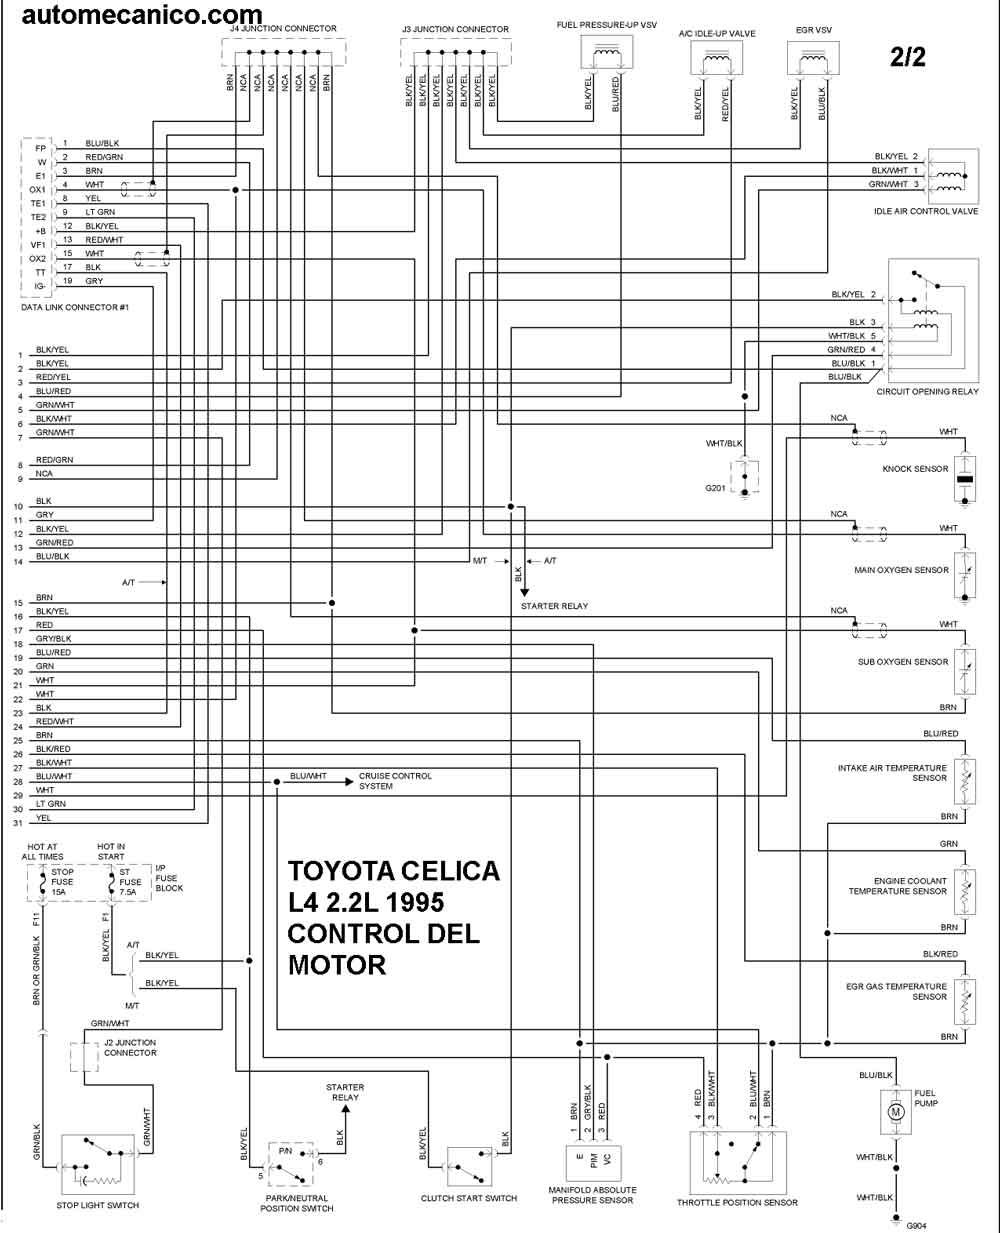 TOYOTA - Diagramas control del motor 1995 - Graphics - Esquemas | Vehiculos  - Motores - Componentes | Mecanica automotriz